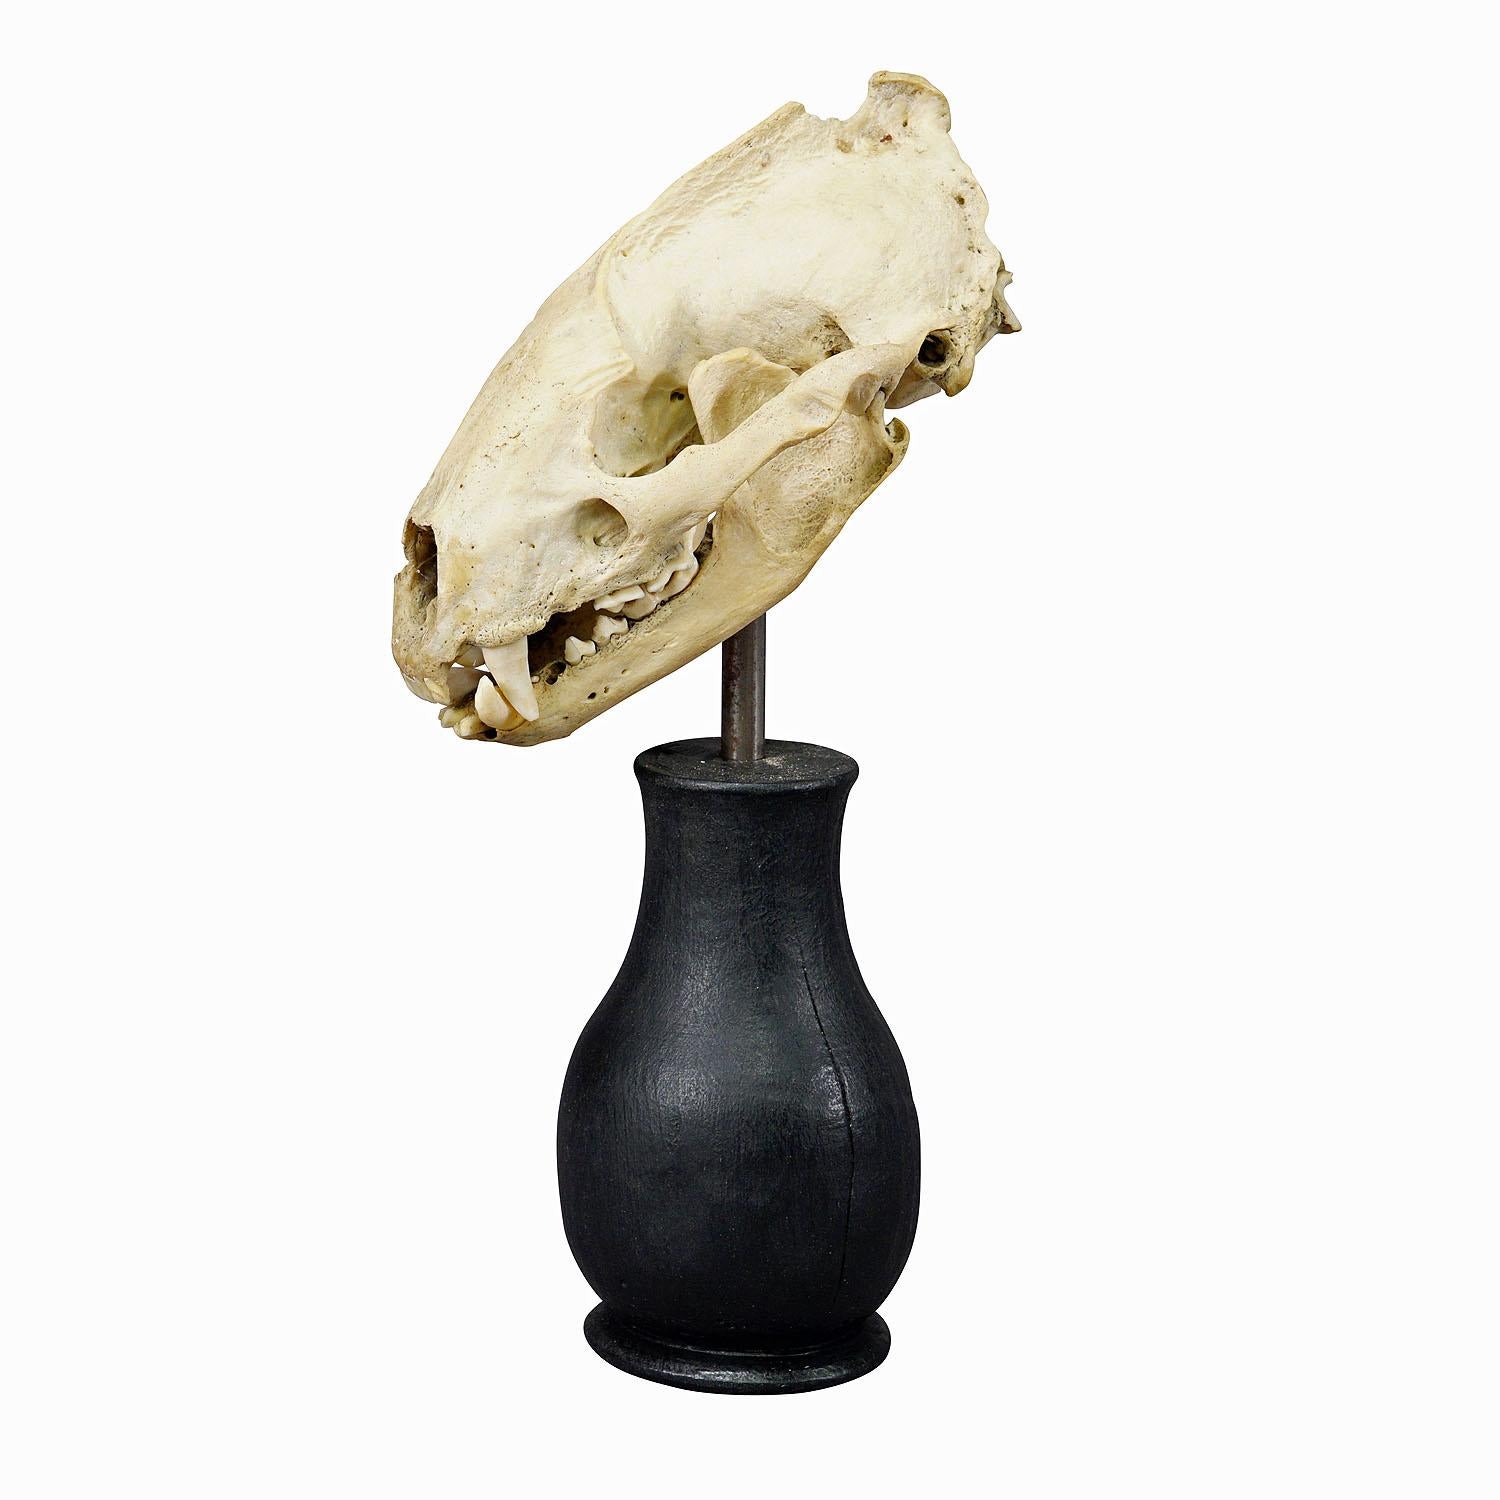 Ancien crâne réel d'un bouffon, Allemagne, vers 1900

Crâne de blaireau (Meles meles) taxidermisé, monté sur une base en bois tourné ébonisé. Derive de la collection biologique du monastère de Weissenhorn dans le sud de l'Allemagne. 

Cet article